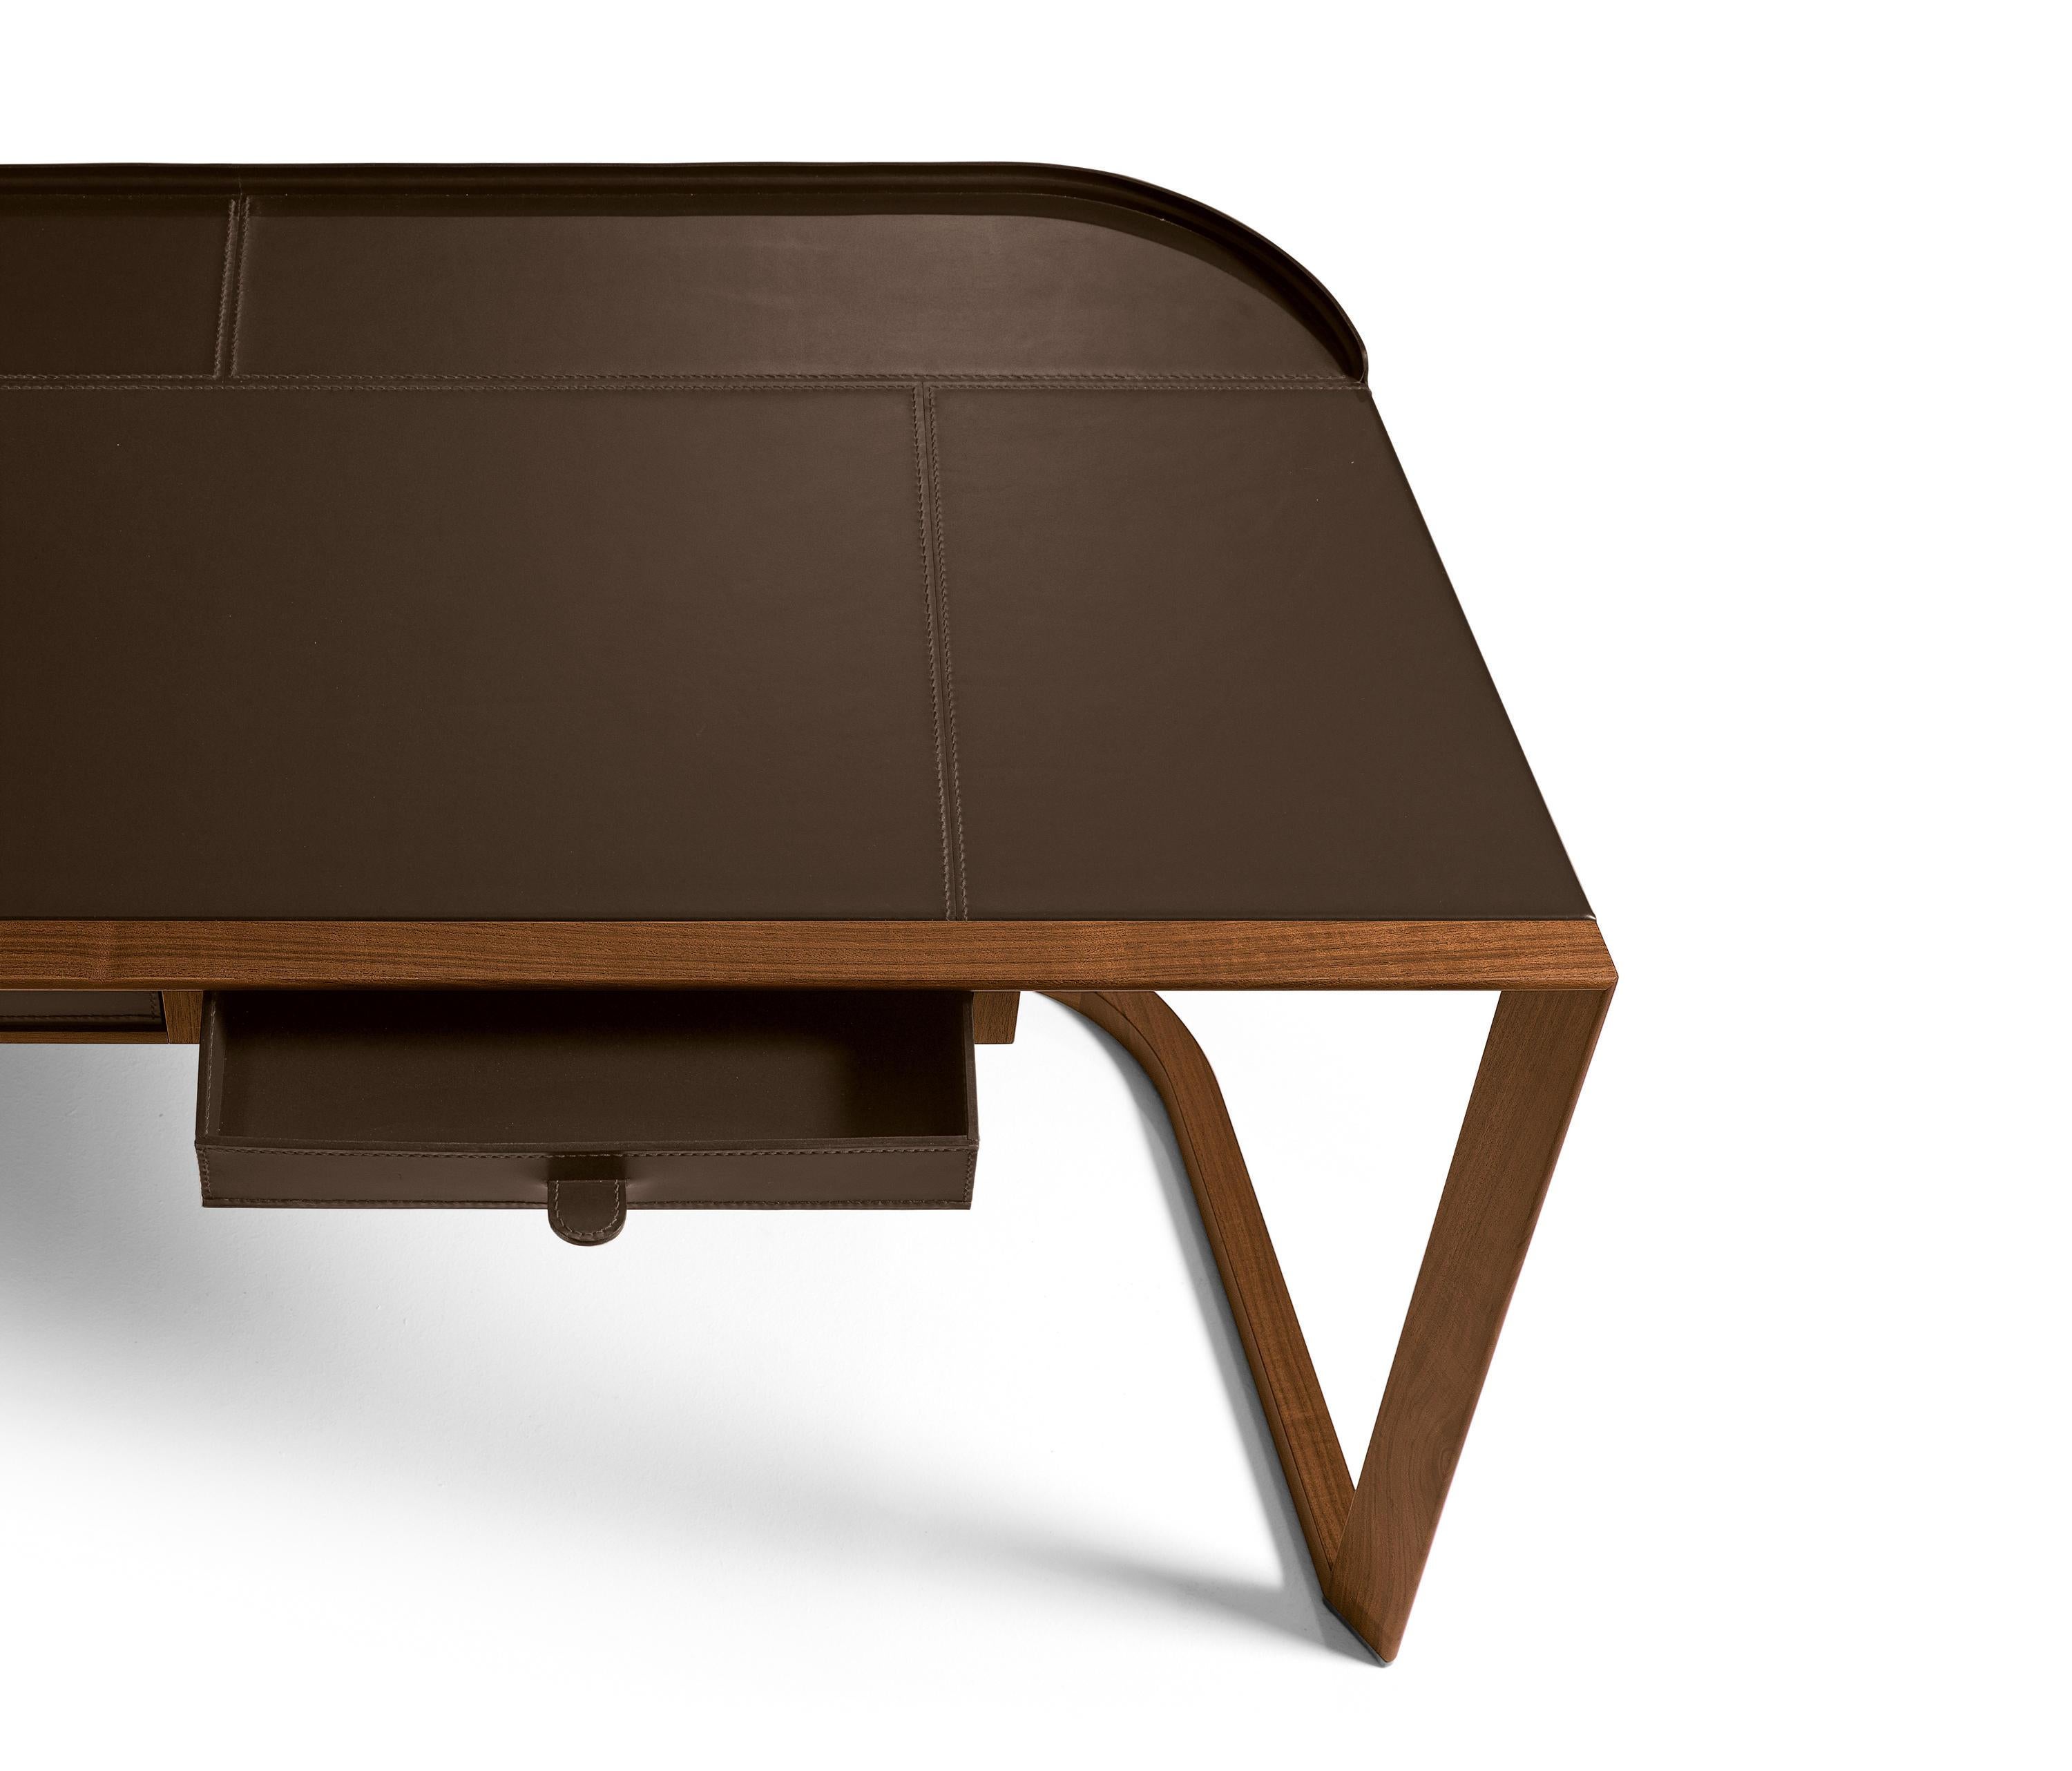 Dieser Schreibtisch aus Nussbaum Canaletto und Sattelleder erinnert an die Leichtigkeit und Eleganz einer ionischen Säule.
Ein vielseitiges und praktisches Produkt, das entwickelt wurde, um einen Arbeitsbereich und ein Heimbüro effizient und